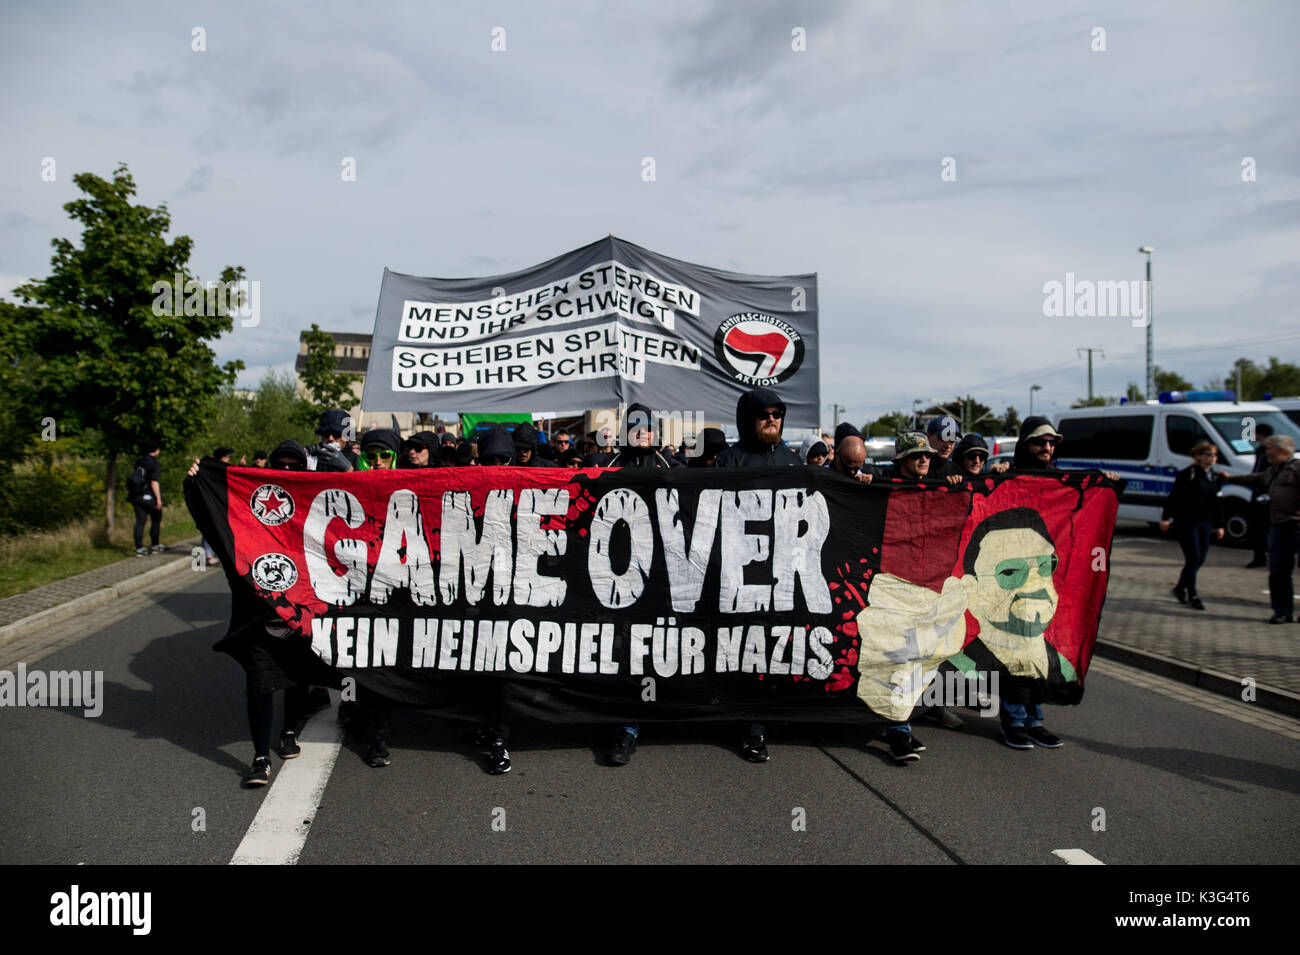 Wurzen, Germania. 02Sep, 2017. Il banner si vede nella parte anteriore della dimostrazione. Circa 400 persone dell'Antifa-Alliance 'somewhere in Germania' dimostrata contro i neo-nazi strutture nella regione durante il 'day di Sassonia". Credito: SOPA Immagini limitata/Alamy Live News Foto Stock